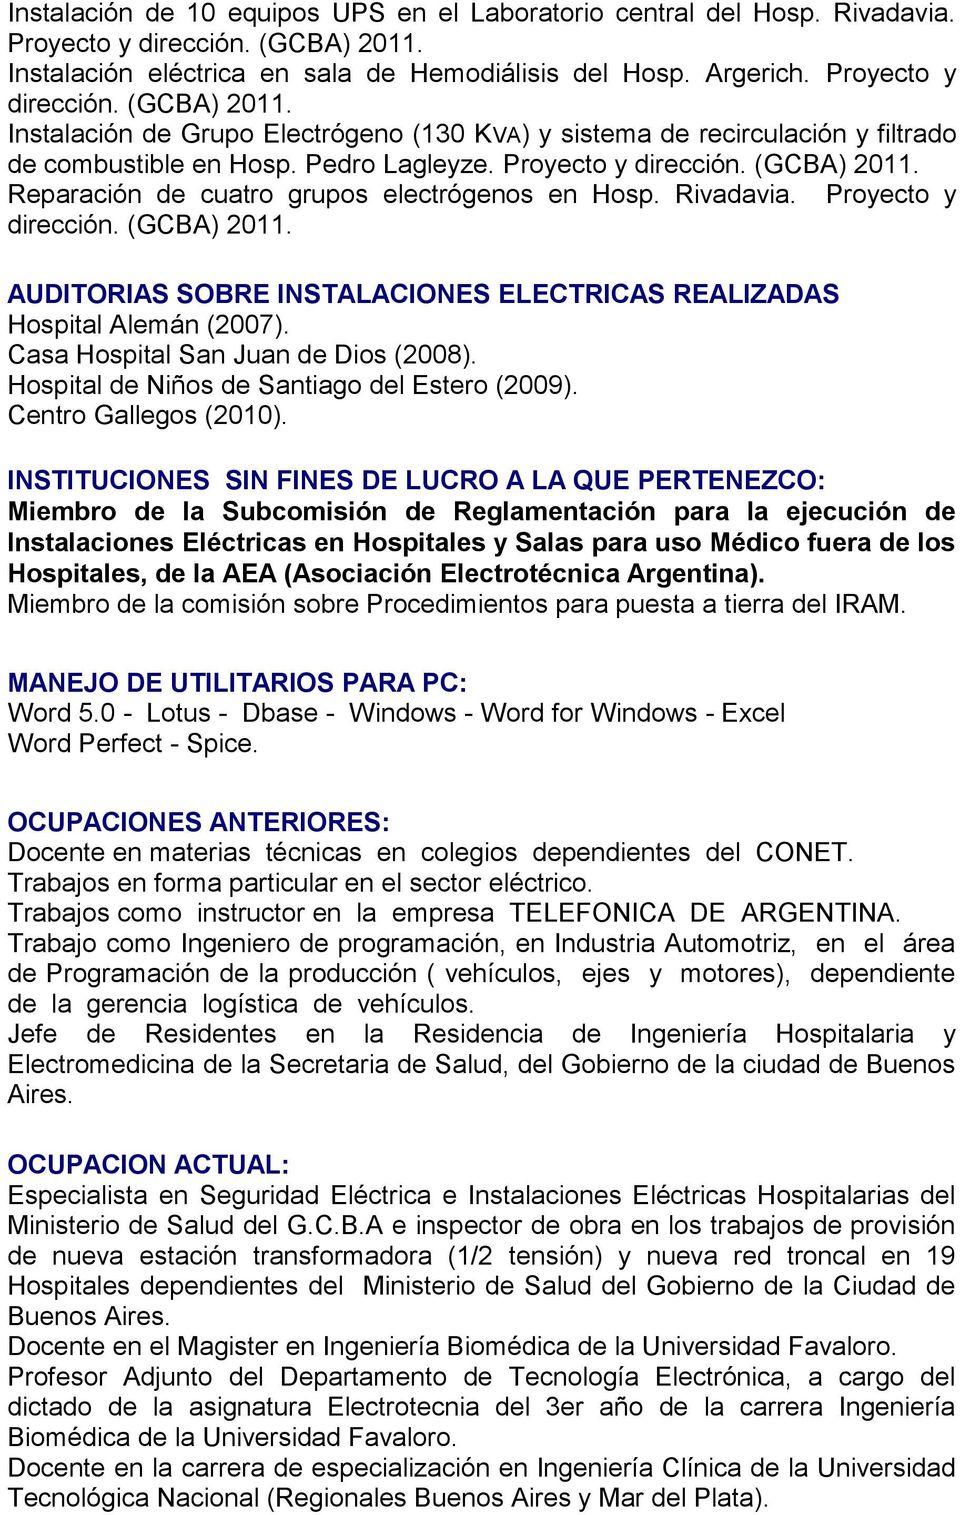 Instalación de Grupo Electrógeno (130 KVA) y sistema de recirculación y filtrado de combustible en Hosp. Pedro Lagleyze. Proyecto y dirección. (GCBA) 2011.